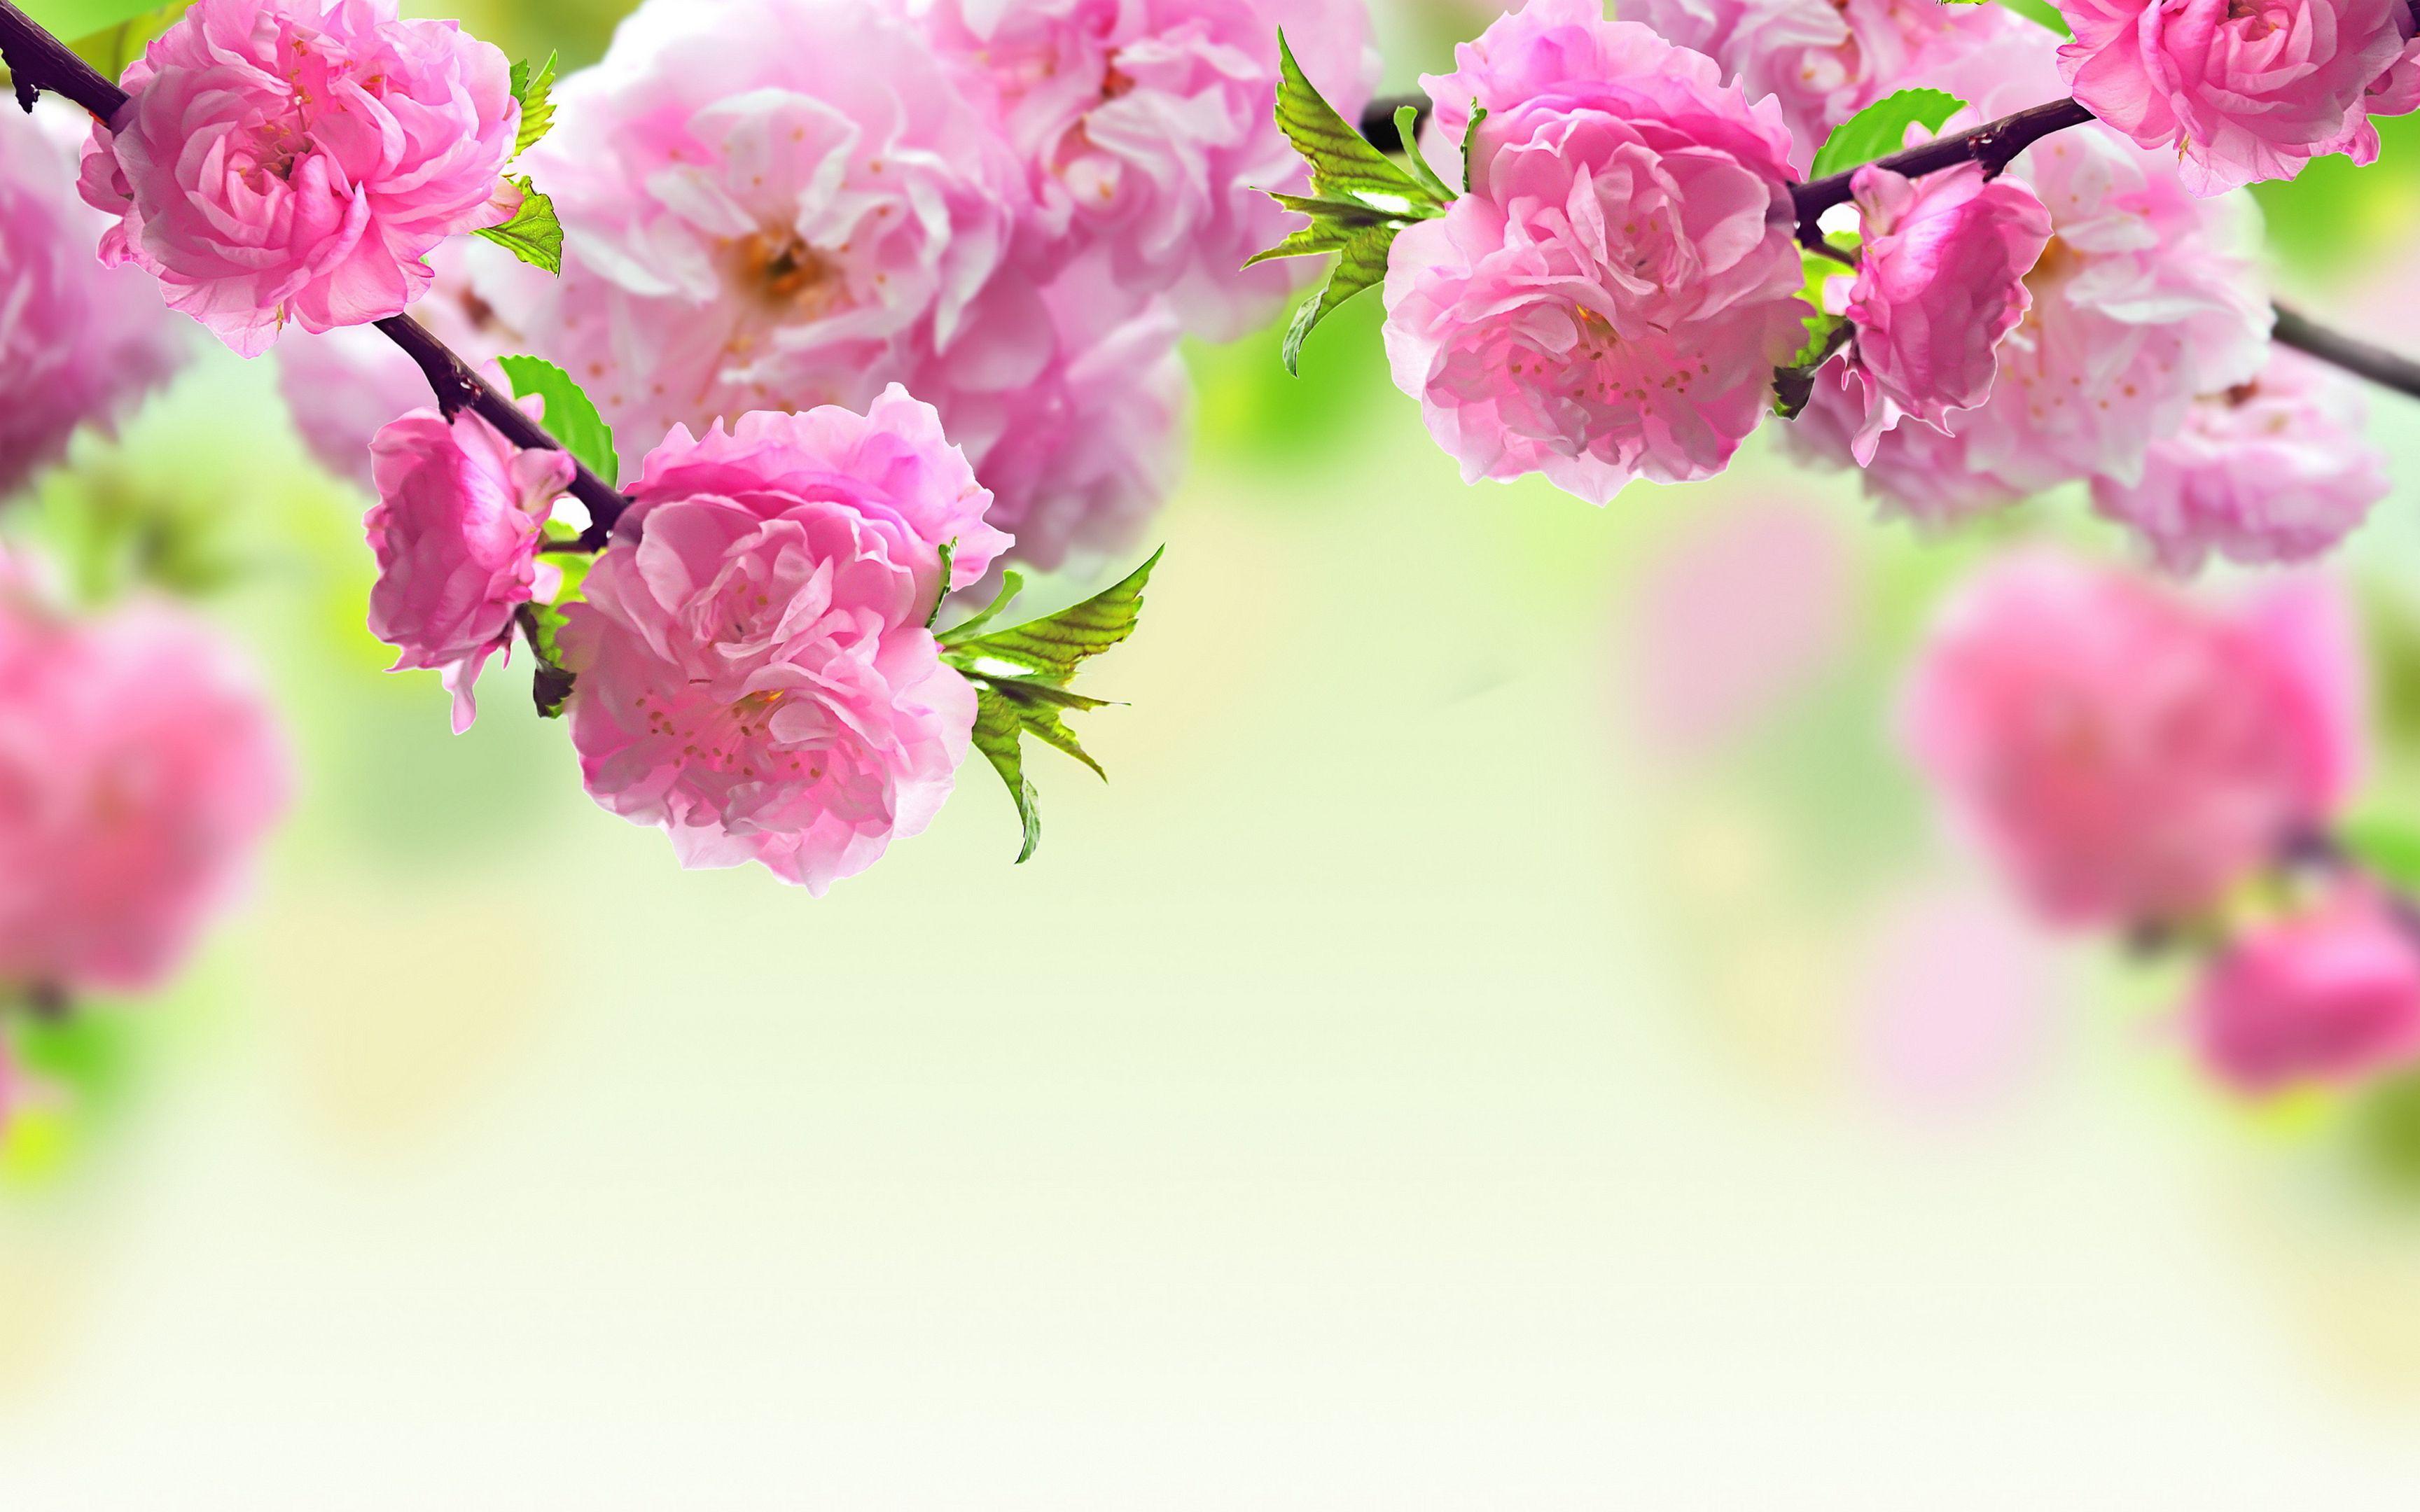 FREE floral wallpaper for your desktop